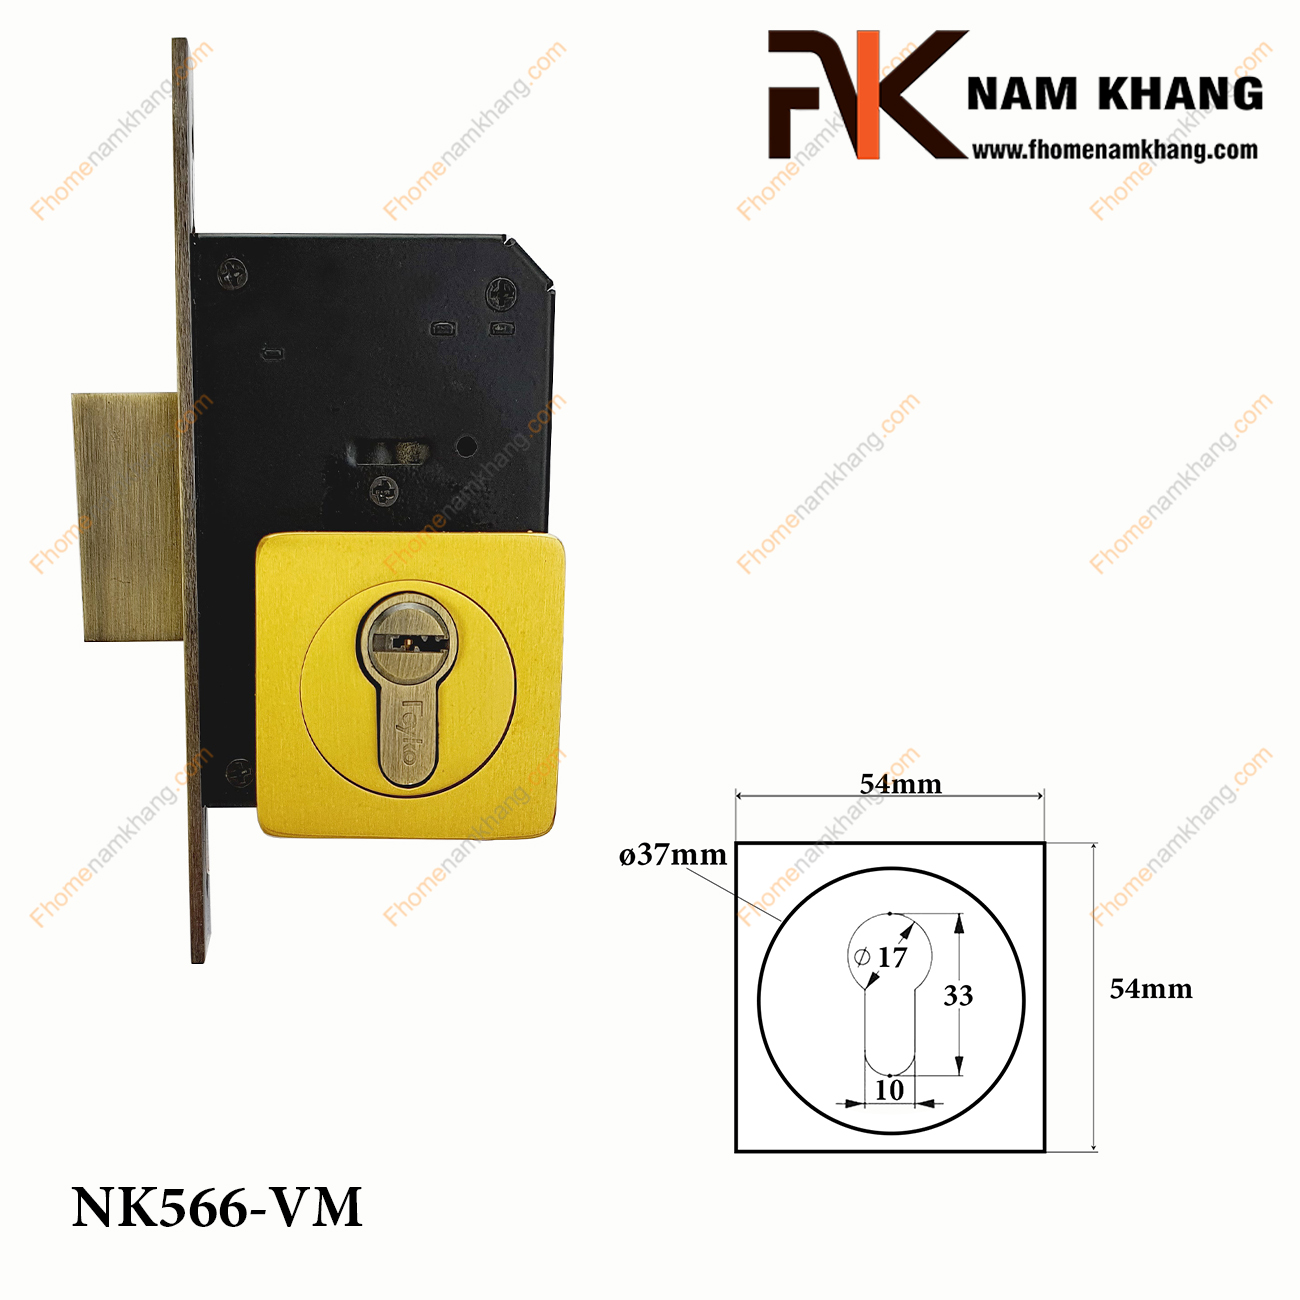 Khóa âm cửa mở bằng đồng cao cấp NK566-VM - dòng khóa cửa nhỏ gọn sử dụng được cho nhiều dạng cửa từ chất liệu gỗ đến nhôm, inox,...Đặc trưng của dòng khóa cửa này ở sự nhỏ gọn, tiện lợi, không quá nhiều chi tiết nhưng vẫn đảm bảo độ thâm mĩ và an toàn cao.